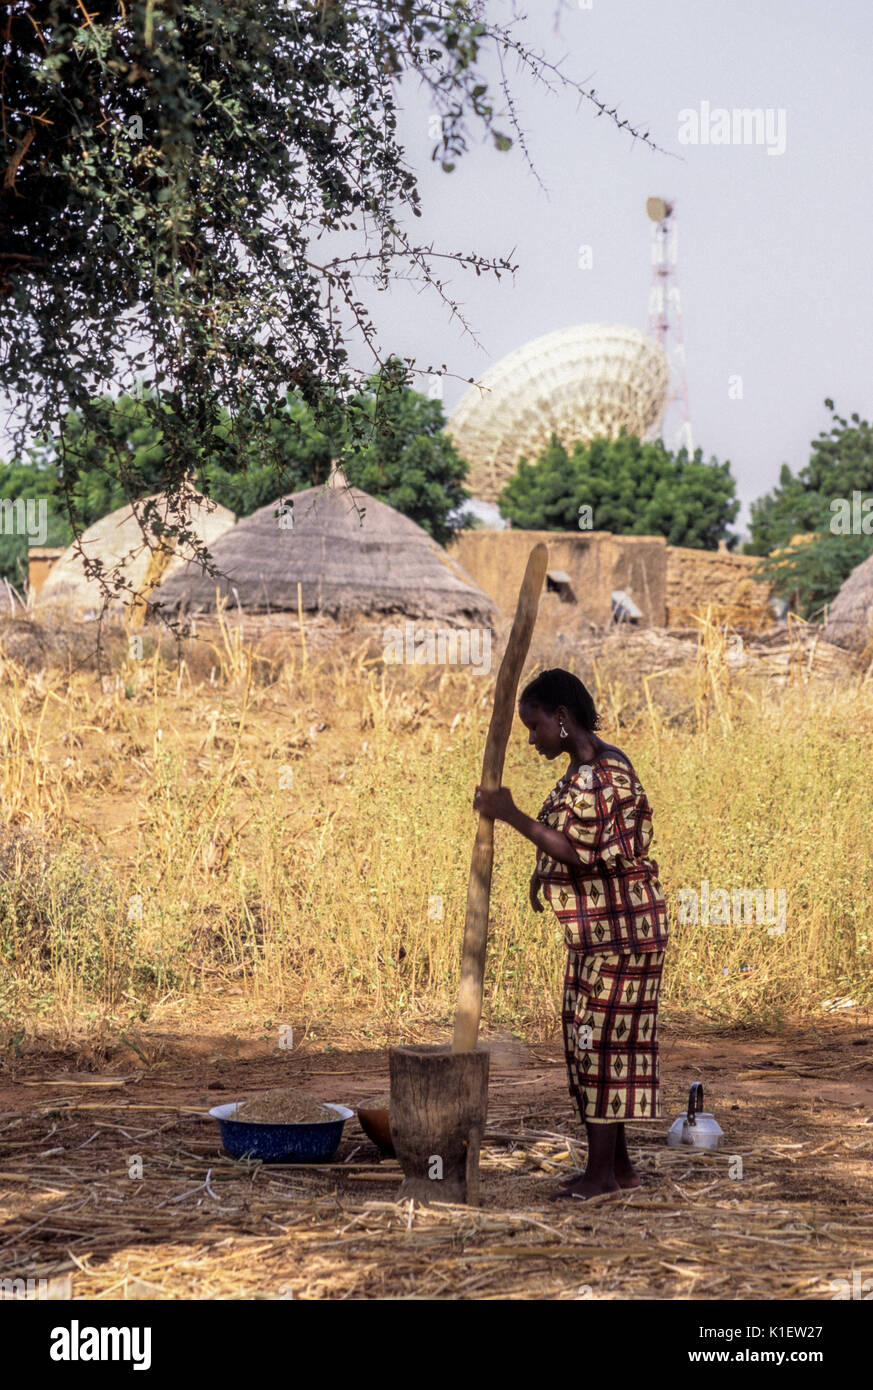 Le Niger, Afrique de l'Ouest, le Mil Livres femme pour le repas du soir. Antenne Satellite Transmission d'appels téléphoniques internationaux du Niger est en arrière-plan. Banque D'Images